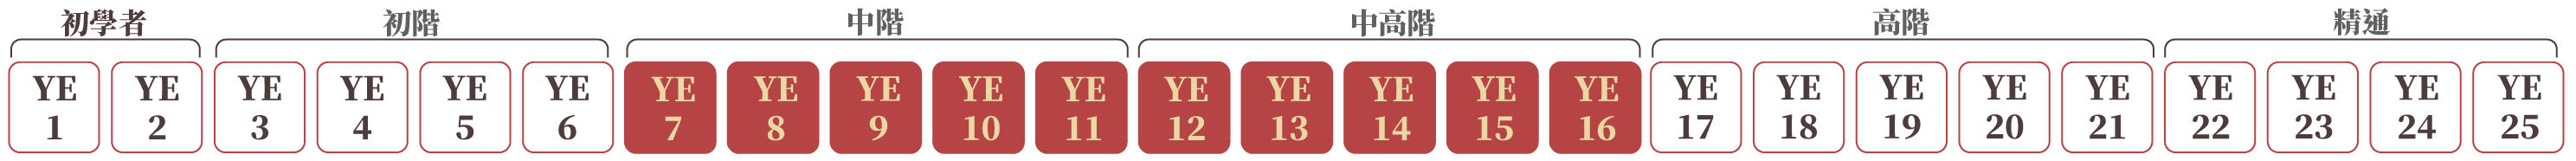 YE7-YE16